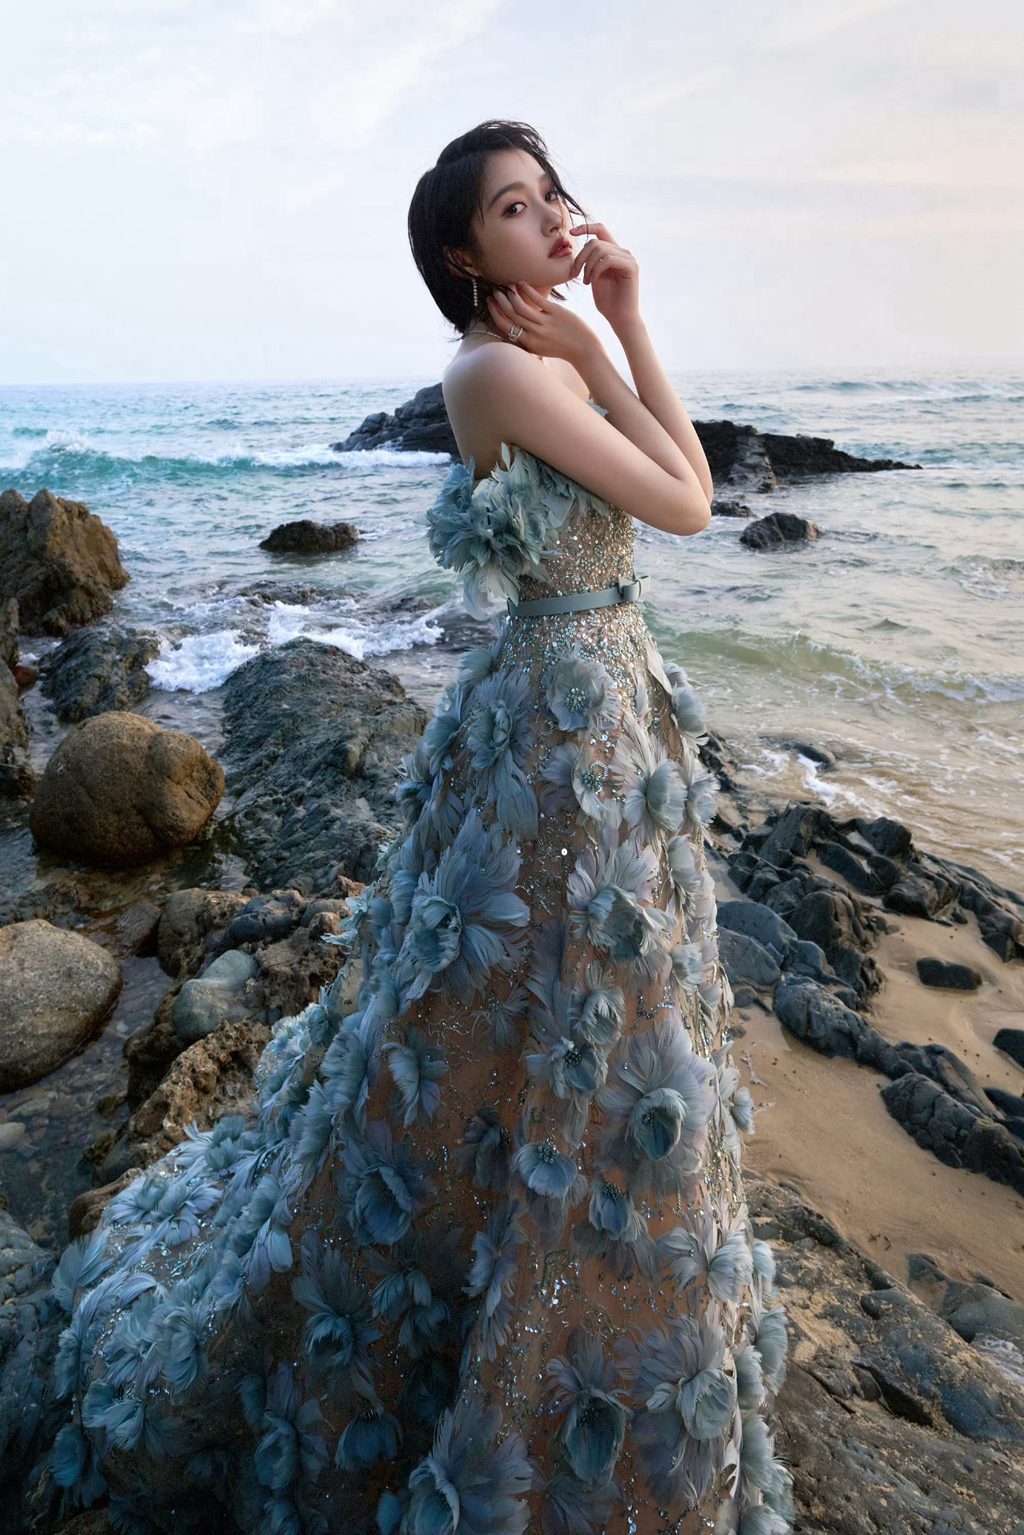 关晓彤一袭荷叶裙穿着大海边超美气质写真摄影美照图片